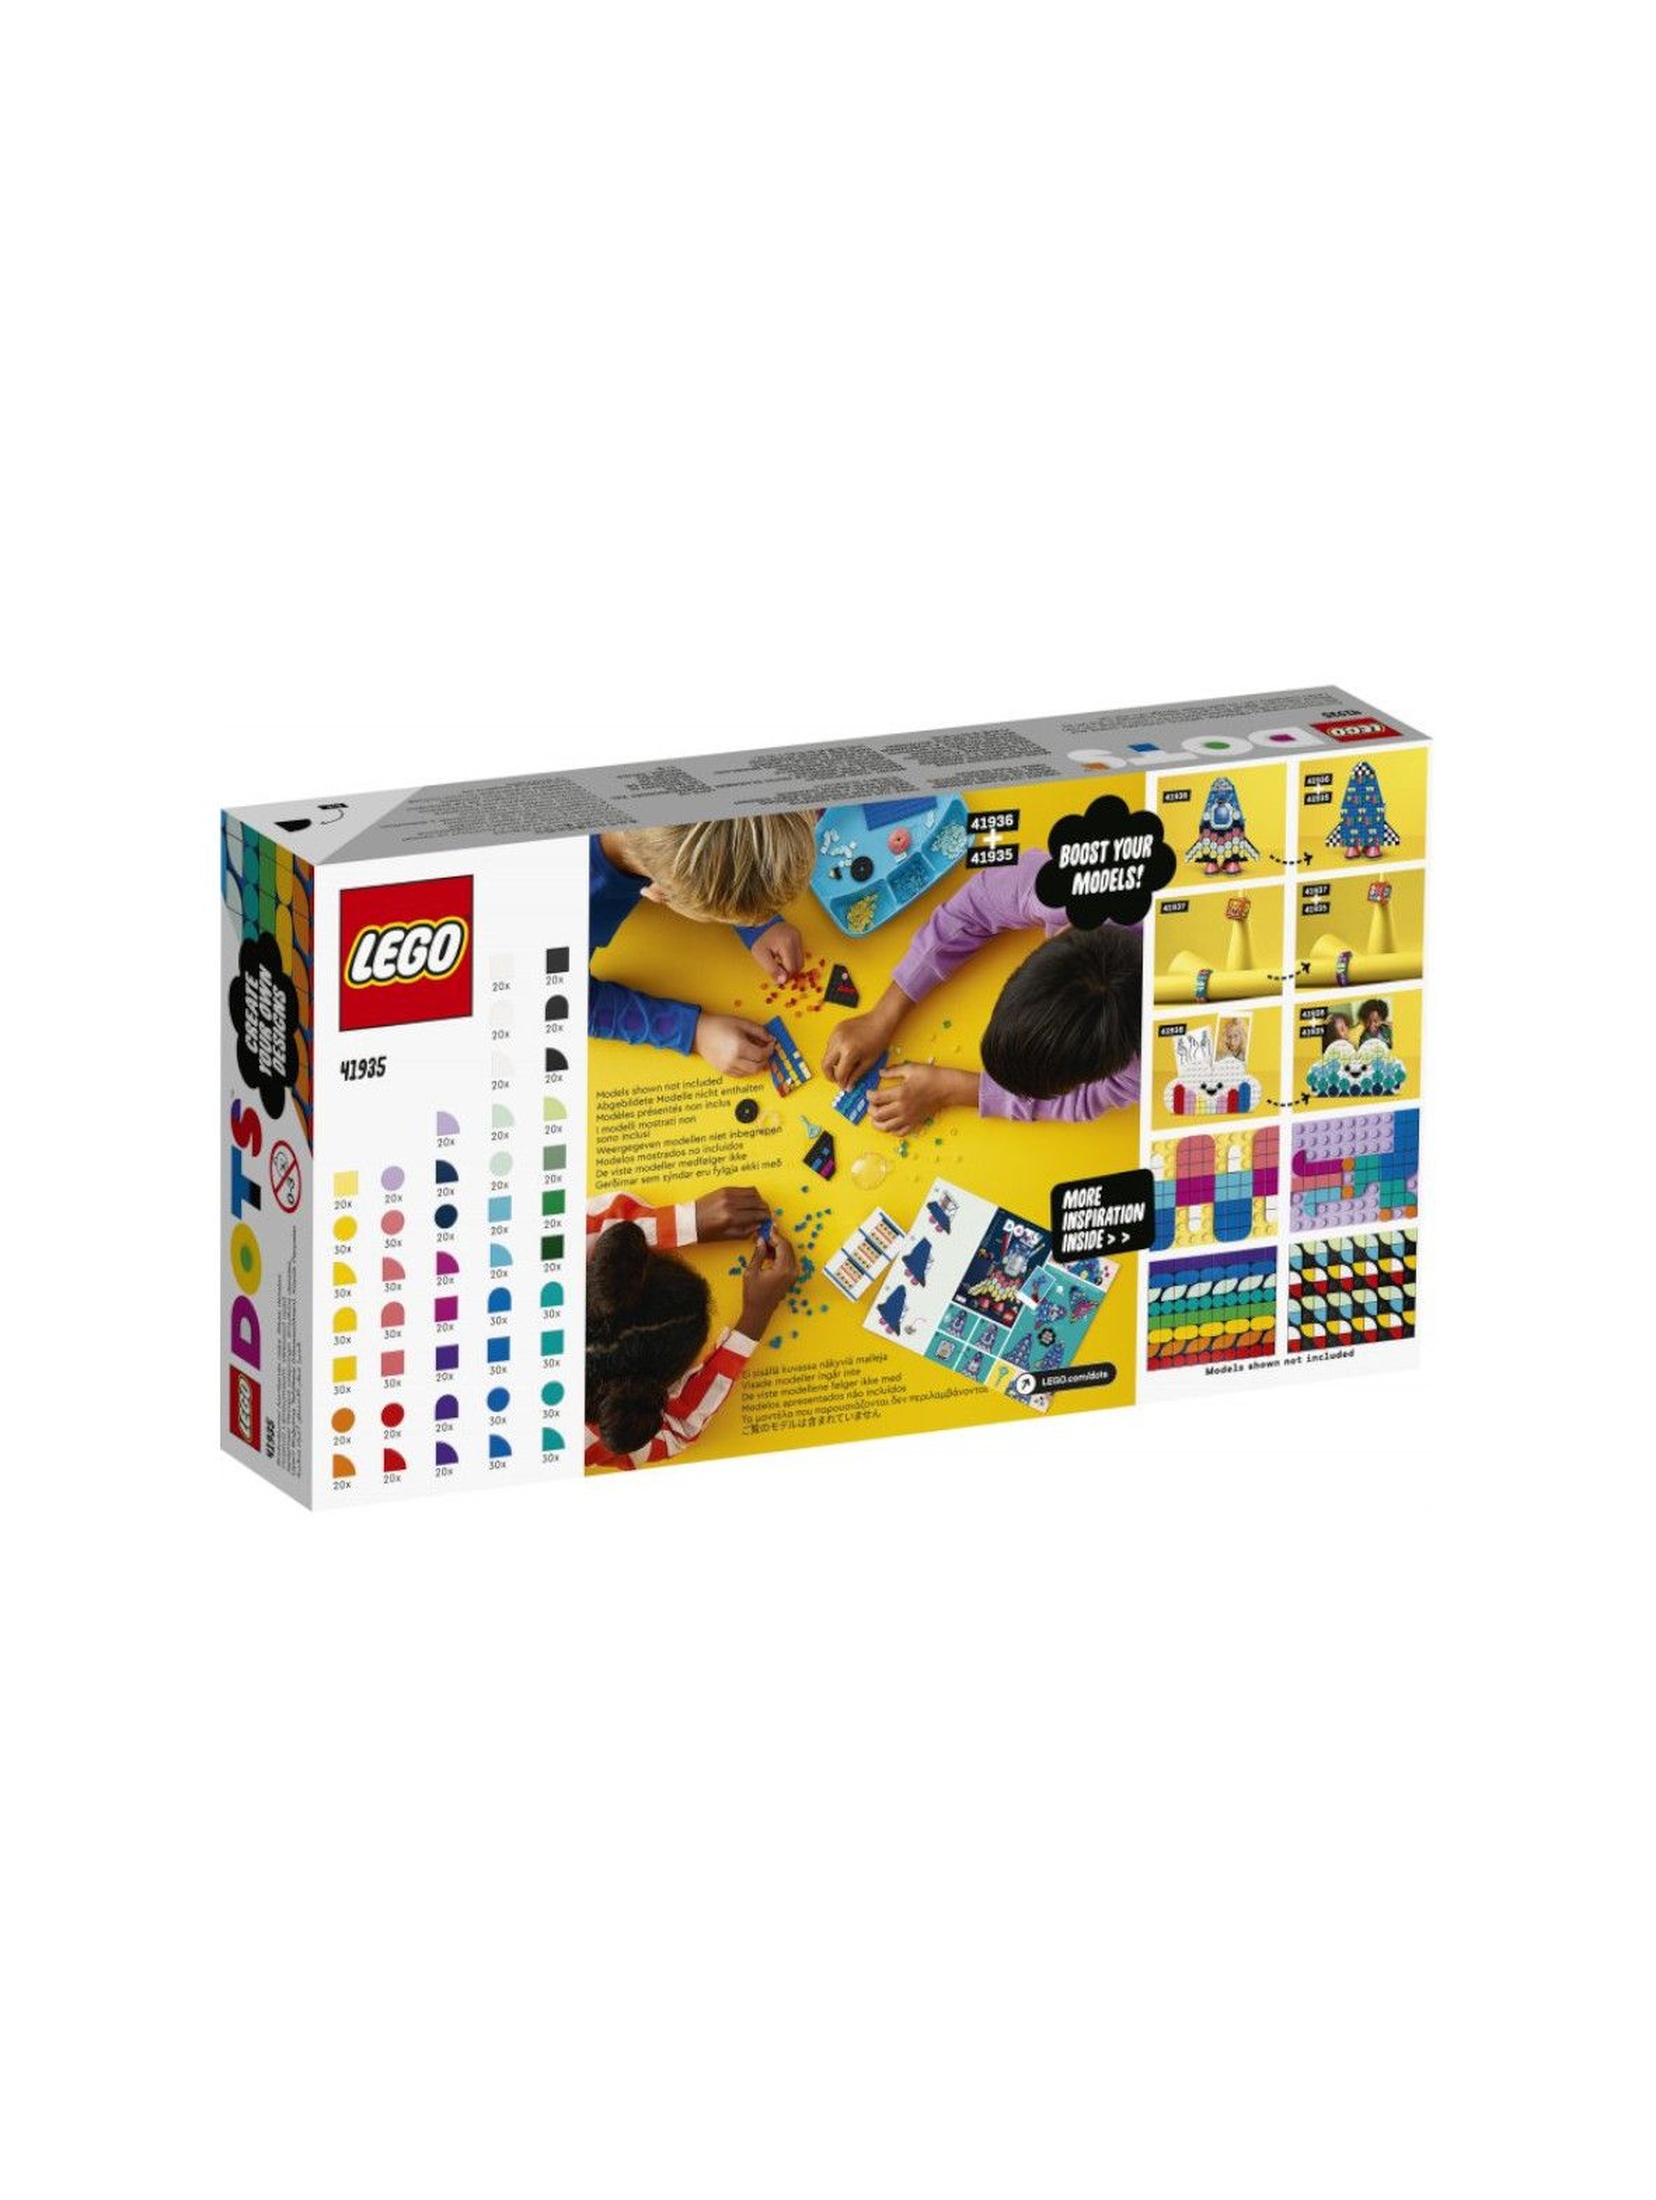 LEGO DOTS 41935 - Rozmaitości DOTS -1000 szt.